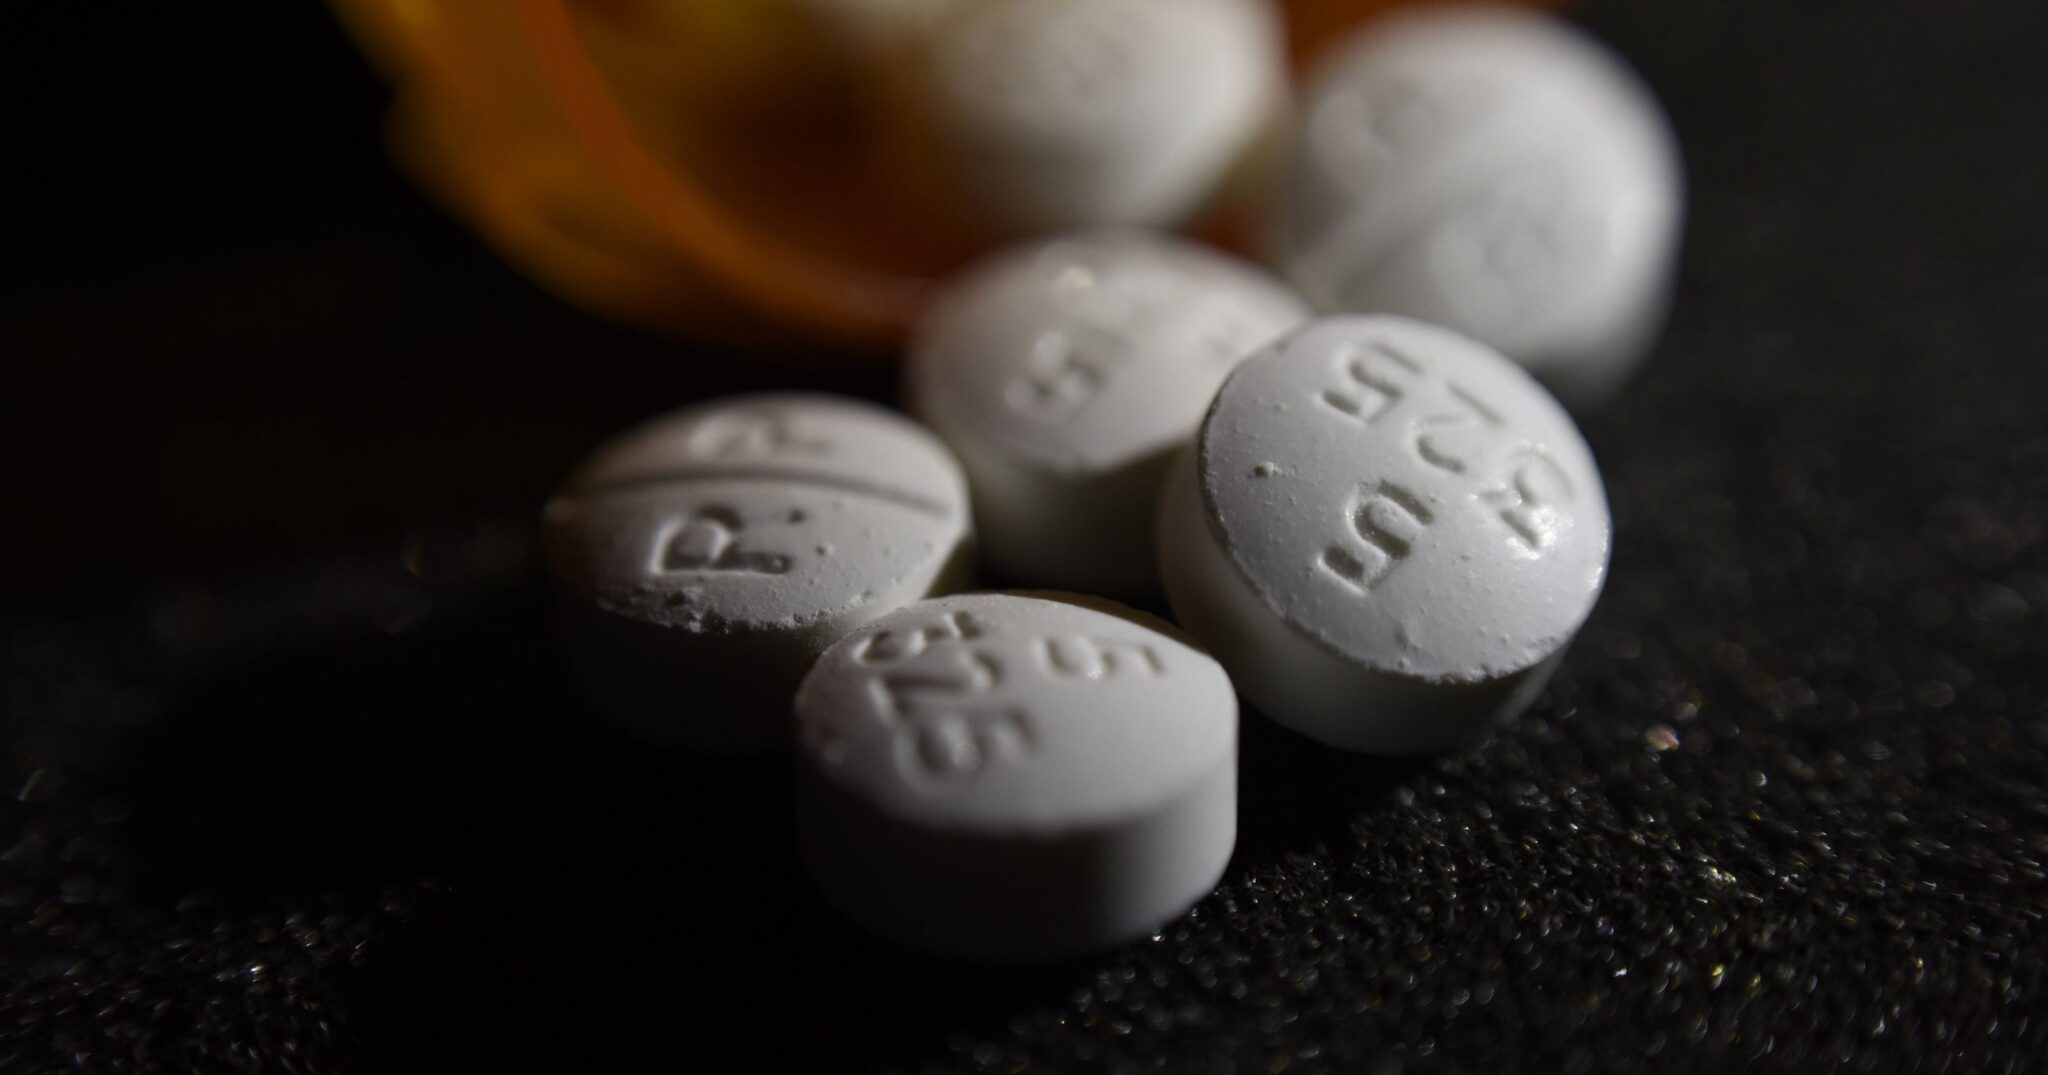 гормональные таблетки и наркотики